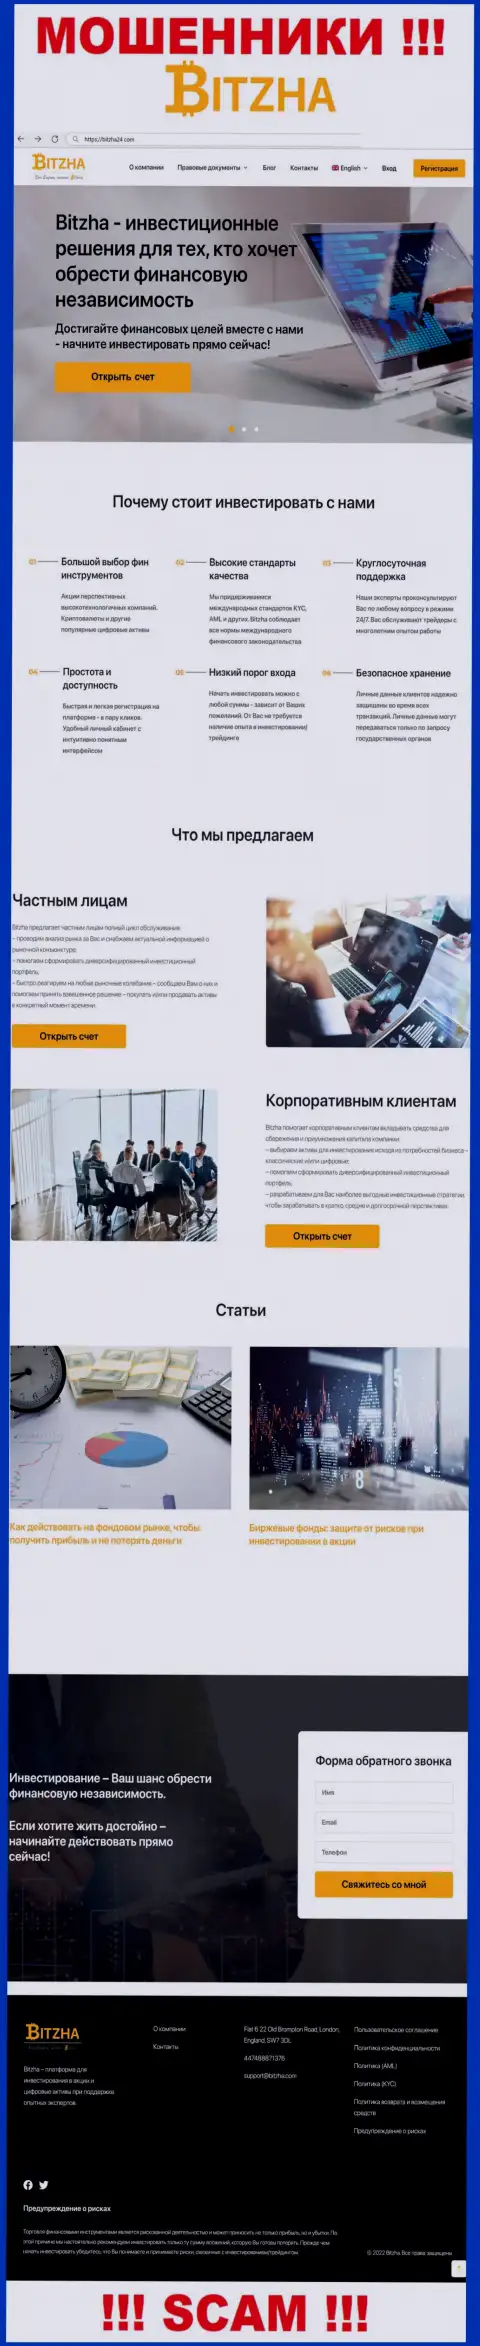 На официальном интернет-портале Bitzha 24 лохов разводят на денежные средства